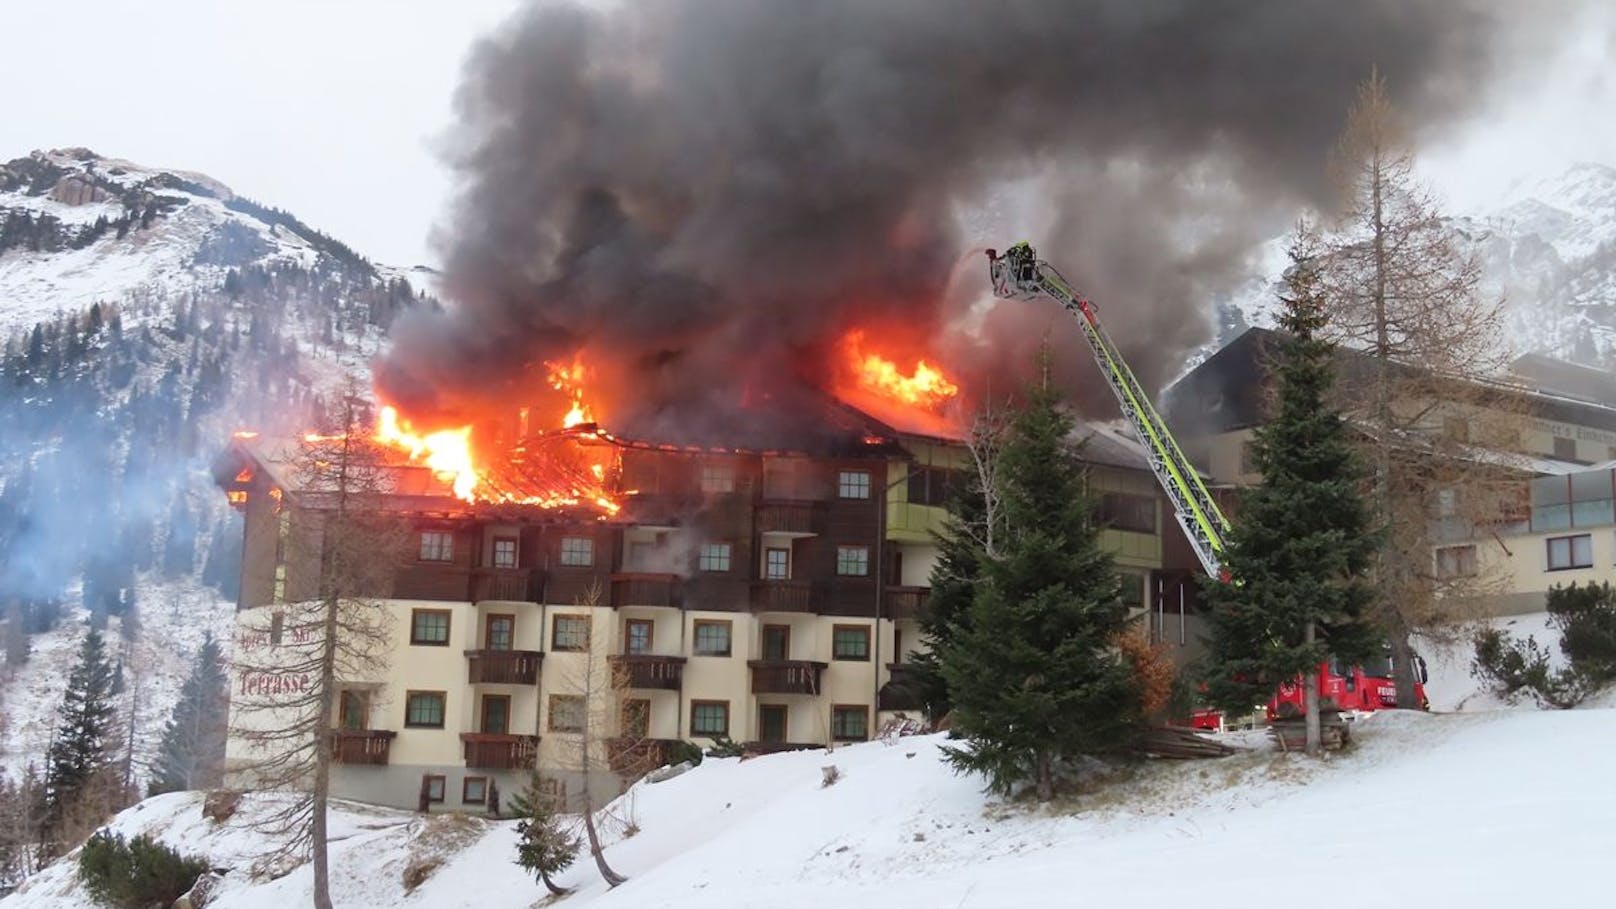 Dachstuhl in Flammen – 200 Feuerwehrleute im Einsatz